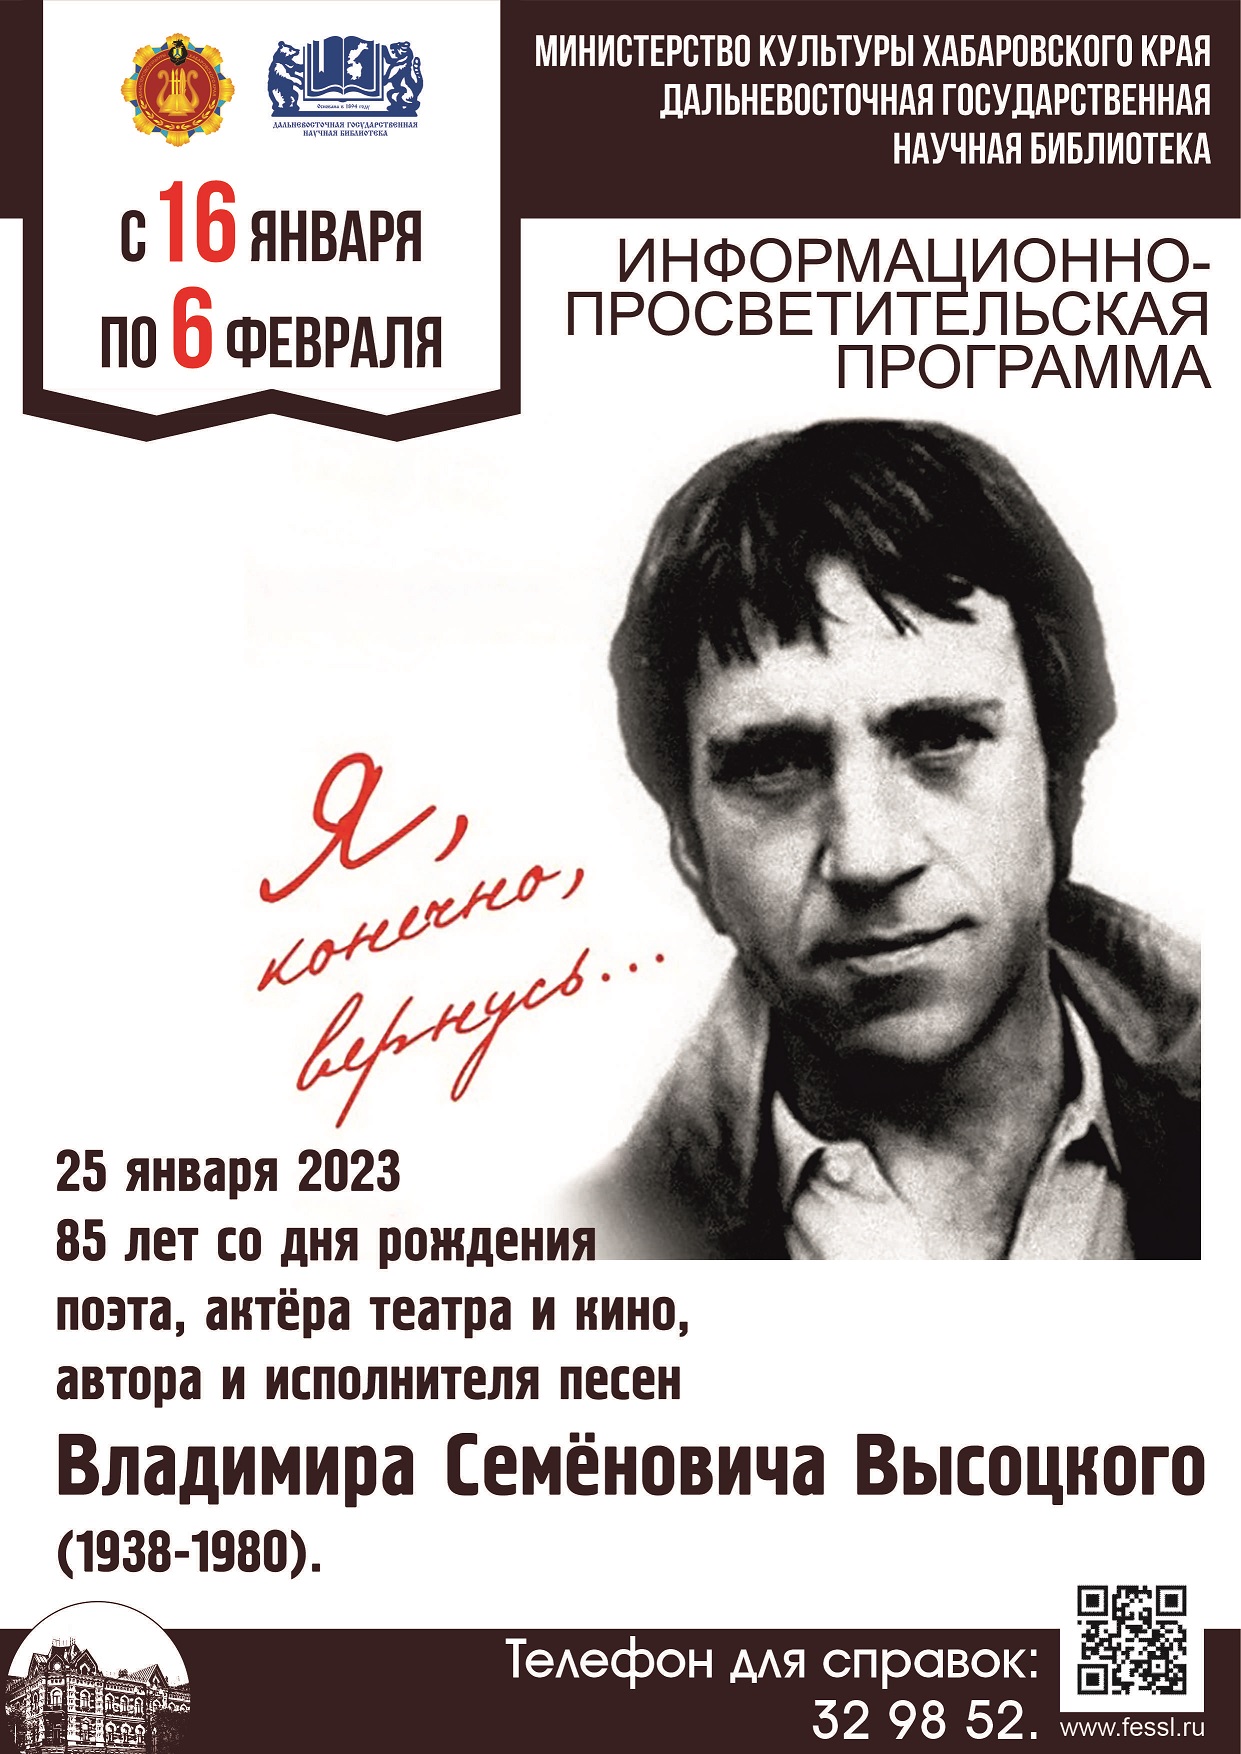 25 января 2023 года исполняется 85 лет со дня рождения удивительного человека – поэта, актёра театра и кино, автора и исполнителя песен Владимира Семёновича Высоцкого (1938-1980).